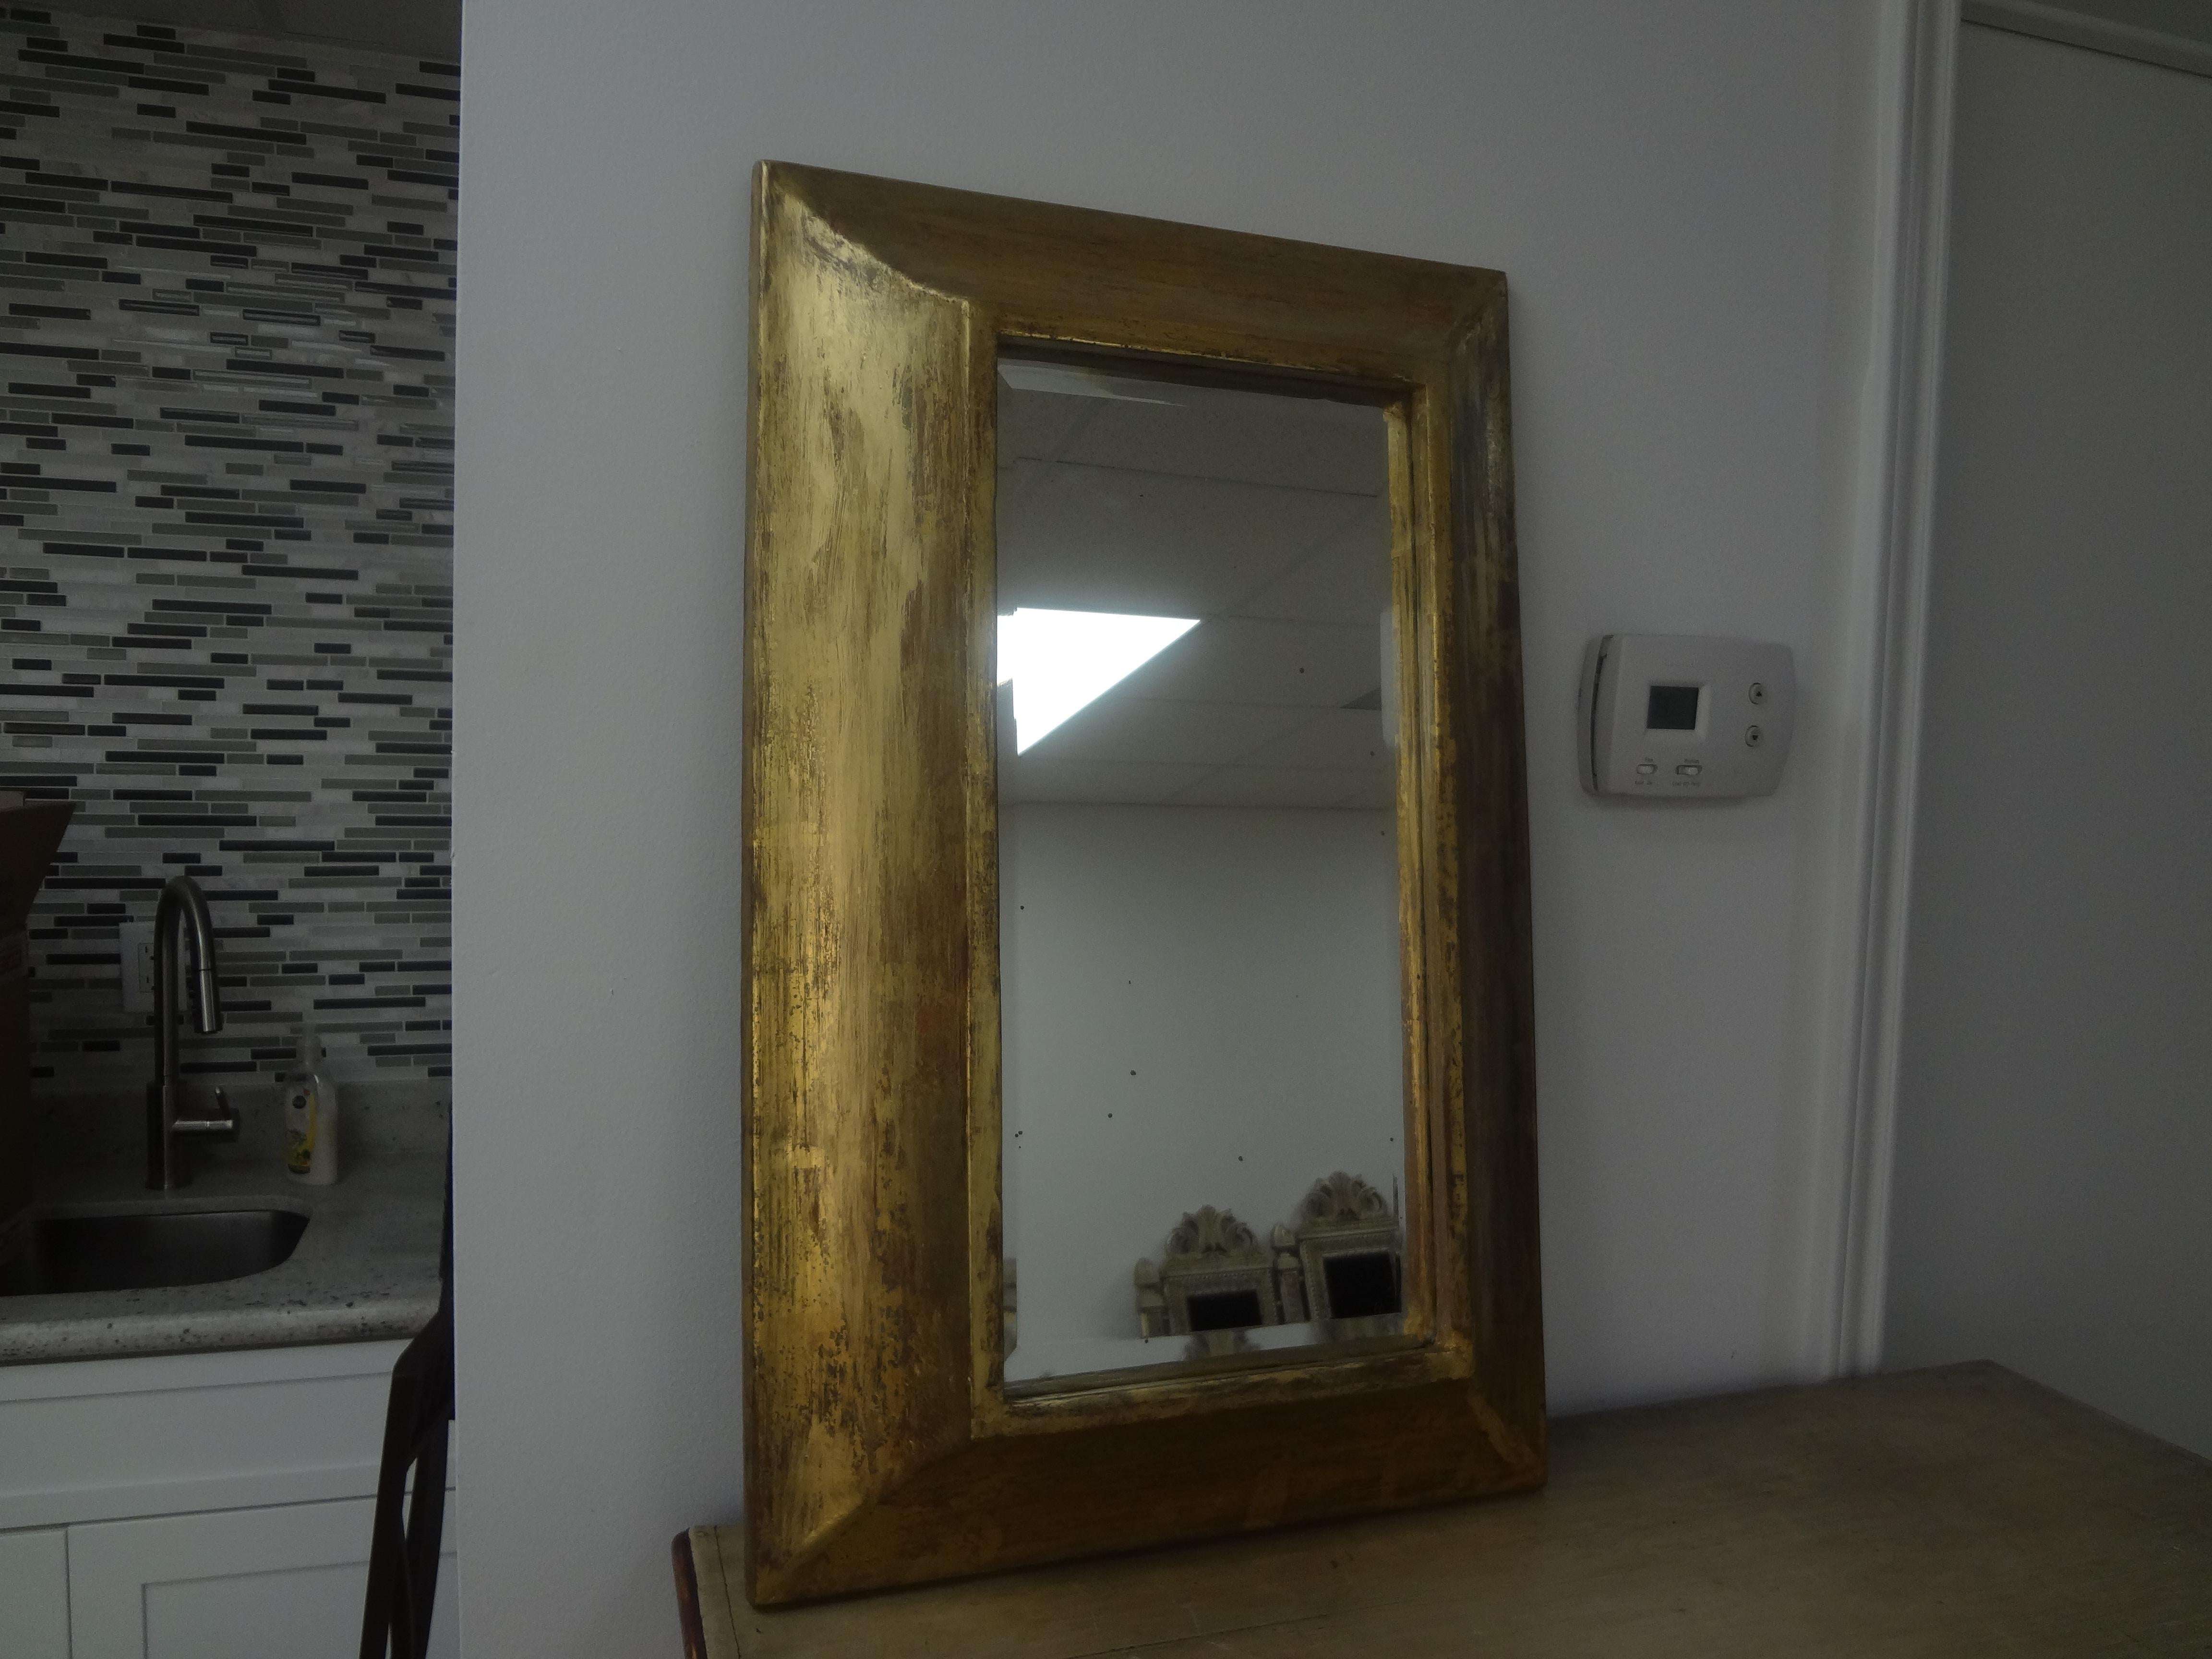 Spiegel aus vergoldetem Holz im Vintage-Stil. Dieser vergoldete Spiegel, der wahrscheinlich aus Italien stammt, hat einen tiefen Rahmen, der ihm eine dreidimensionale Wirkung verleiht.
Er würde sich gut in einem Badezimmer oder in einer Gruppe mit